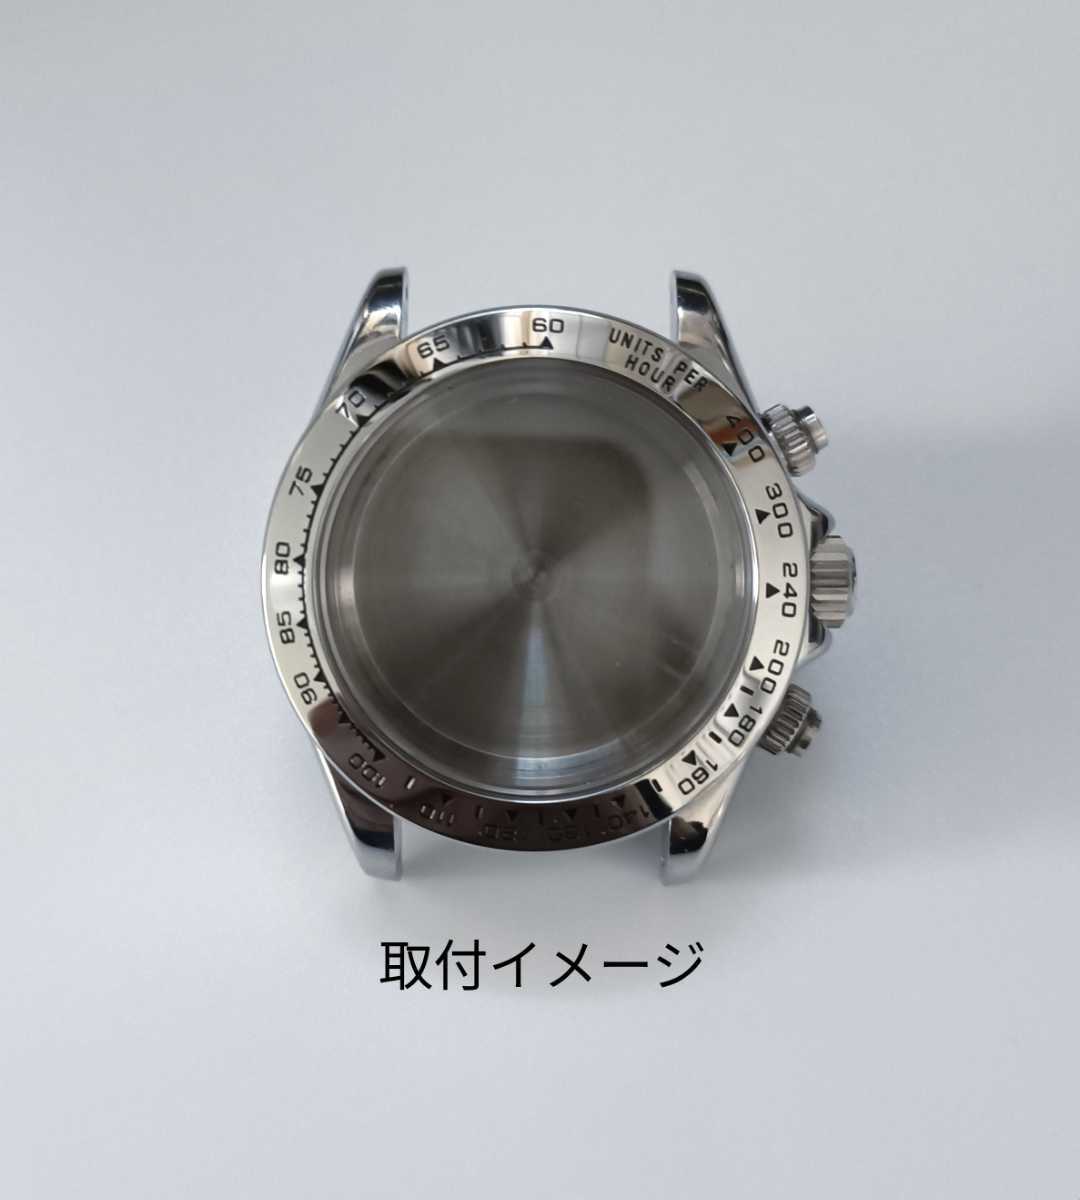  наручные часы ремонт для замены фирма внешний товар нержавеющая сталь оправа серебряный [ соответствует ] Rolex Daytona 16520/16509/116500/116509/116520 серия Rolex сменный 